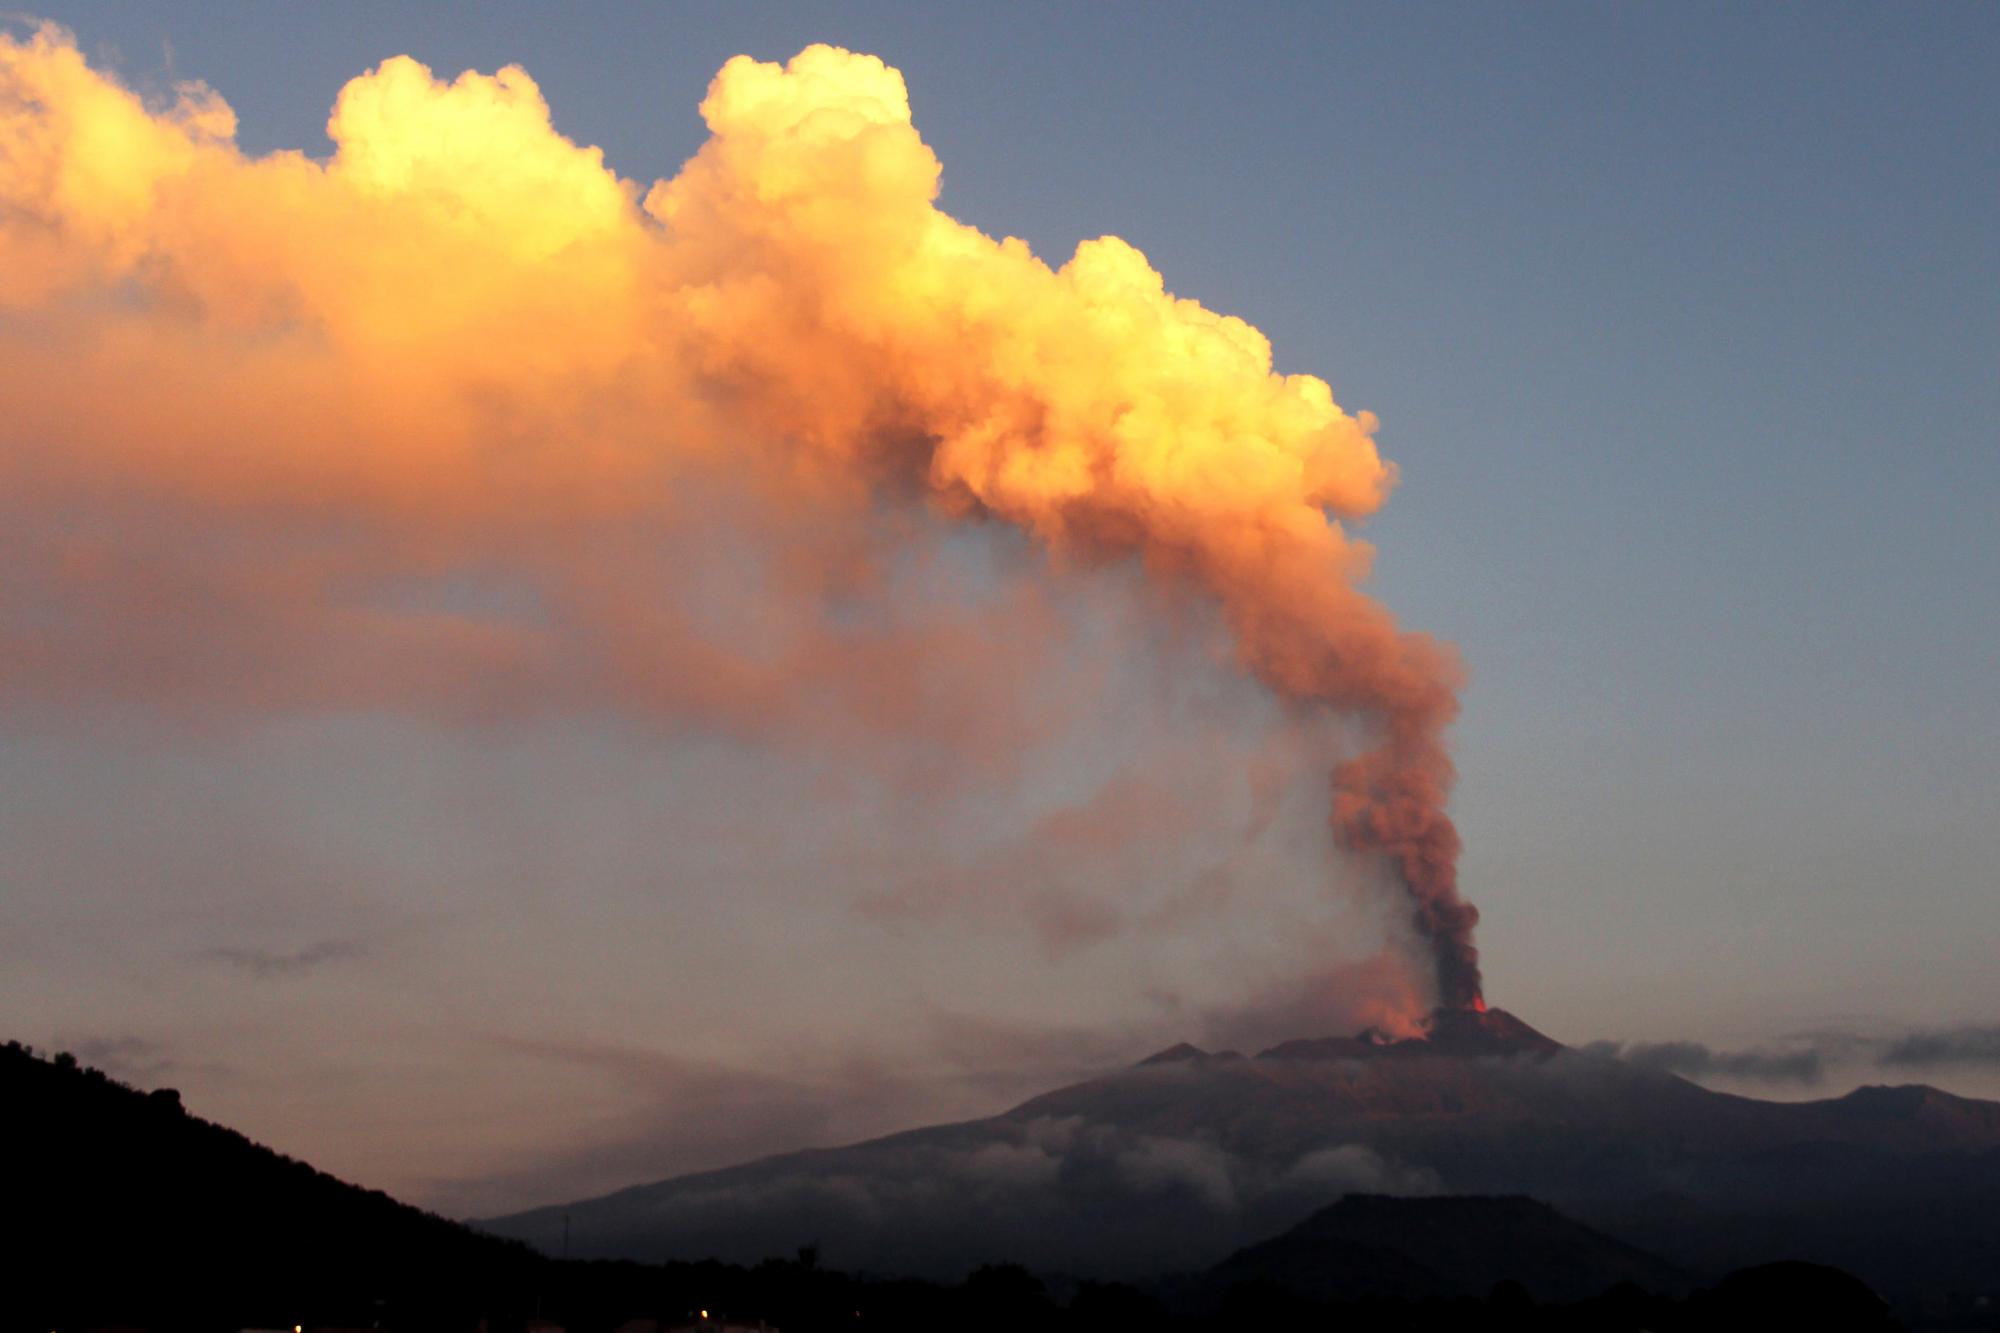 В Италии проснулся вулкан Этна. ВИДЕО